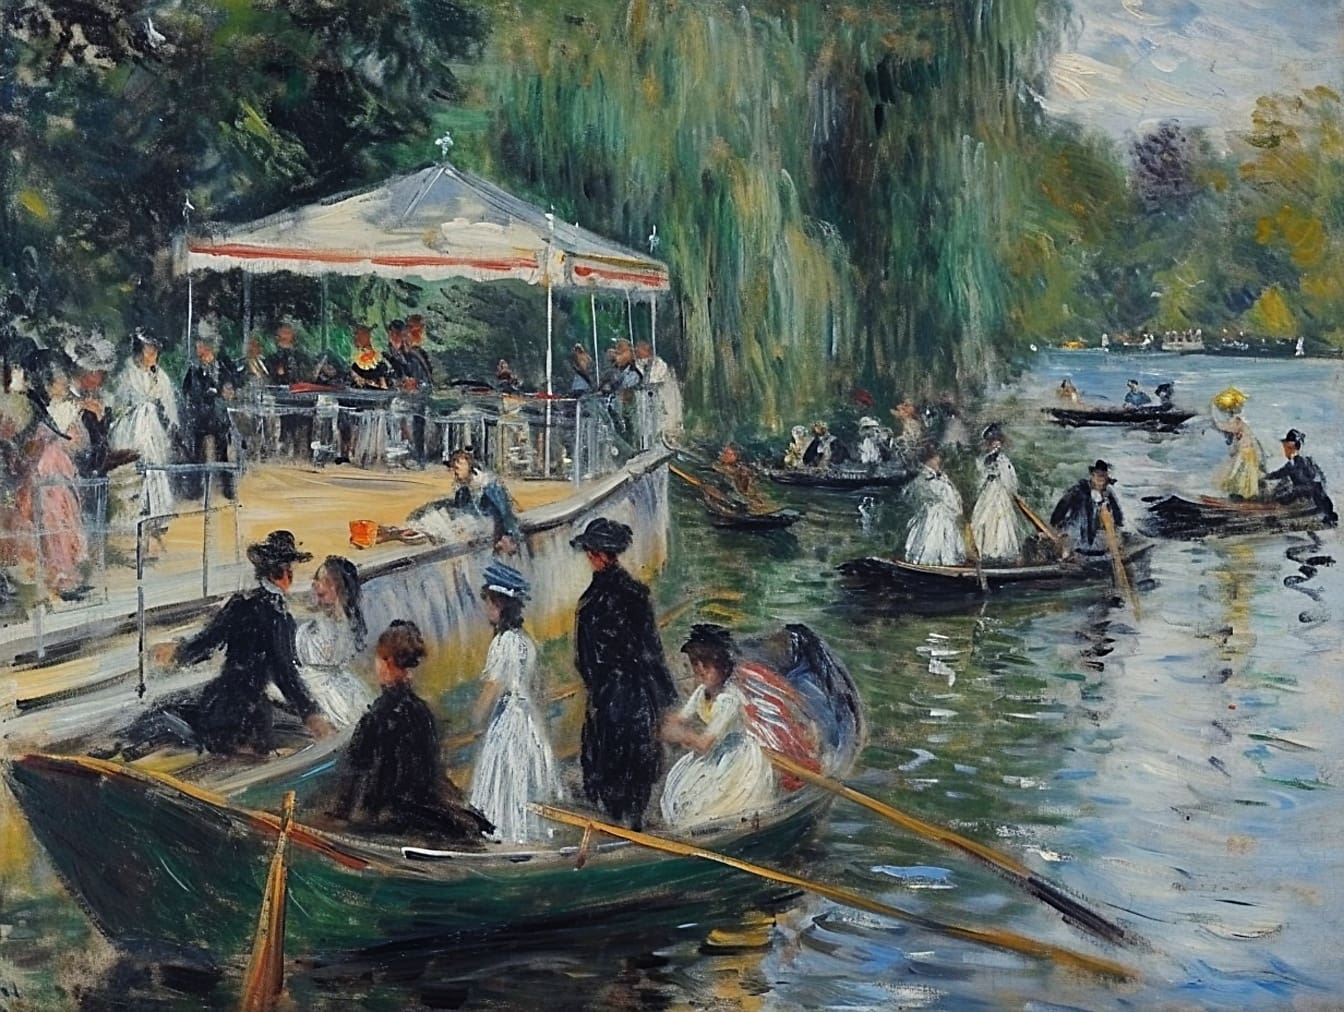 Varlıklı insanların 19. yüzyıl yaşam tarzını tasvir eden bir nehirde teknelerdeki insanların yağlı boya tablosu